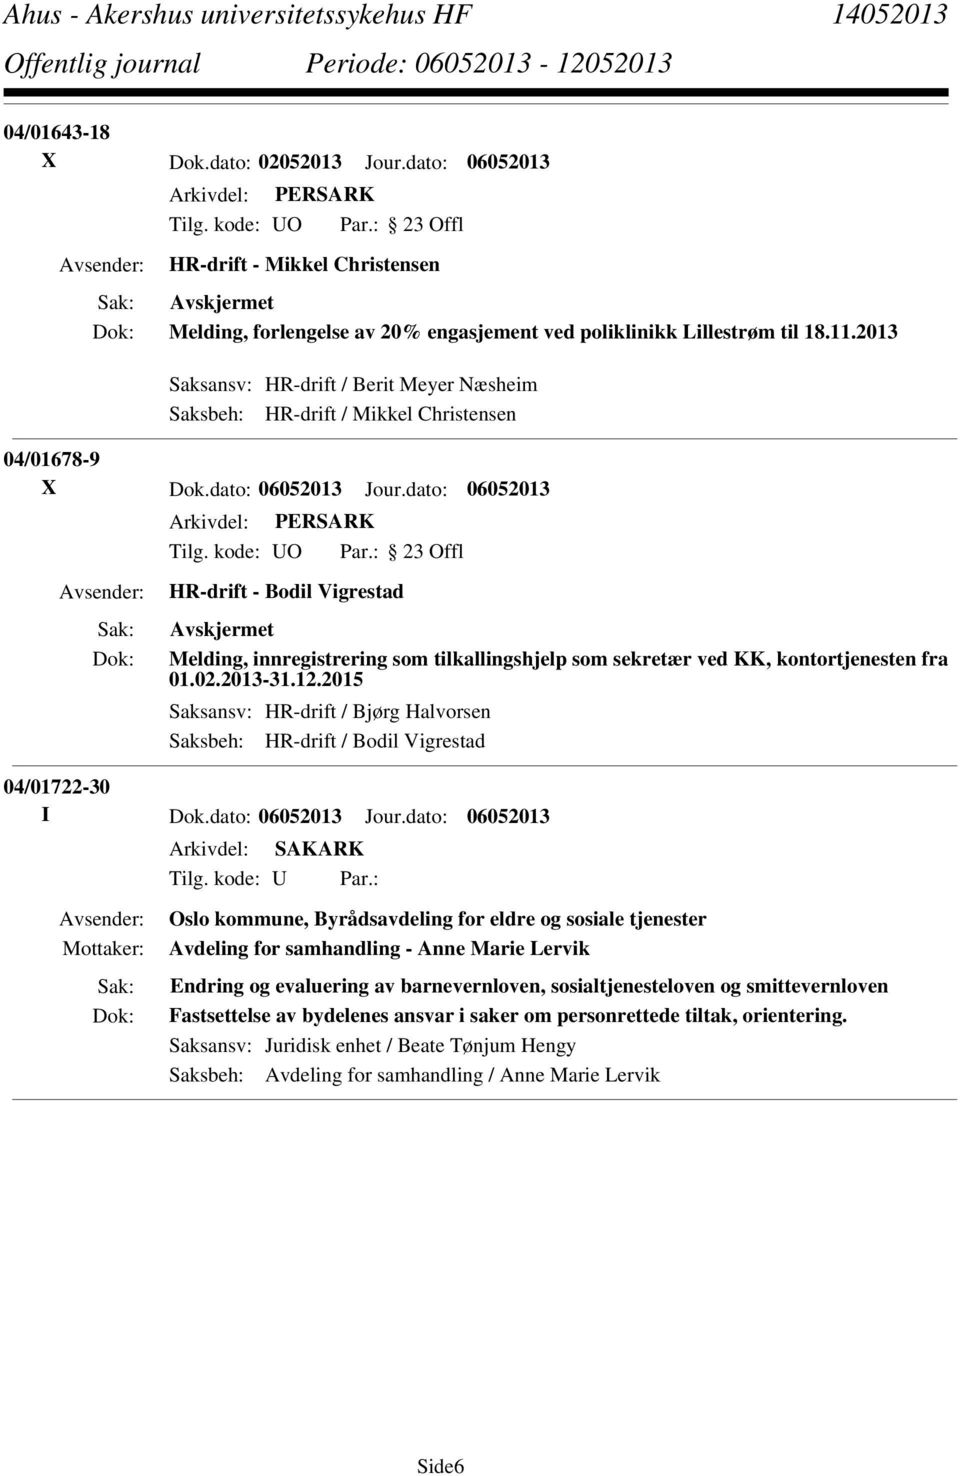 dato: 06052013 HR-drift - Bodil Vigrestad Melding, innregistrering som tilkallingshjelp som sekretær ved KK, kontortjenesten fra 01.02.2013-31.12.